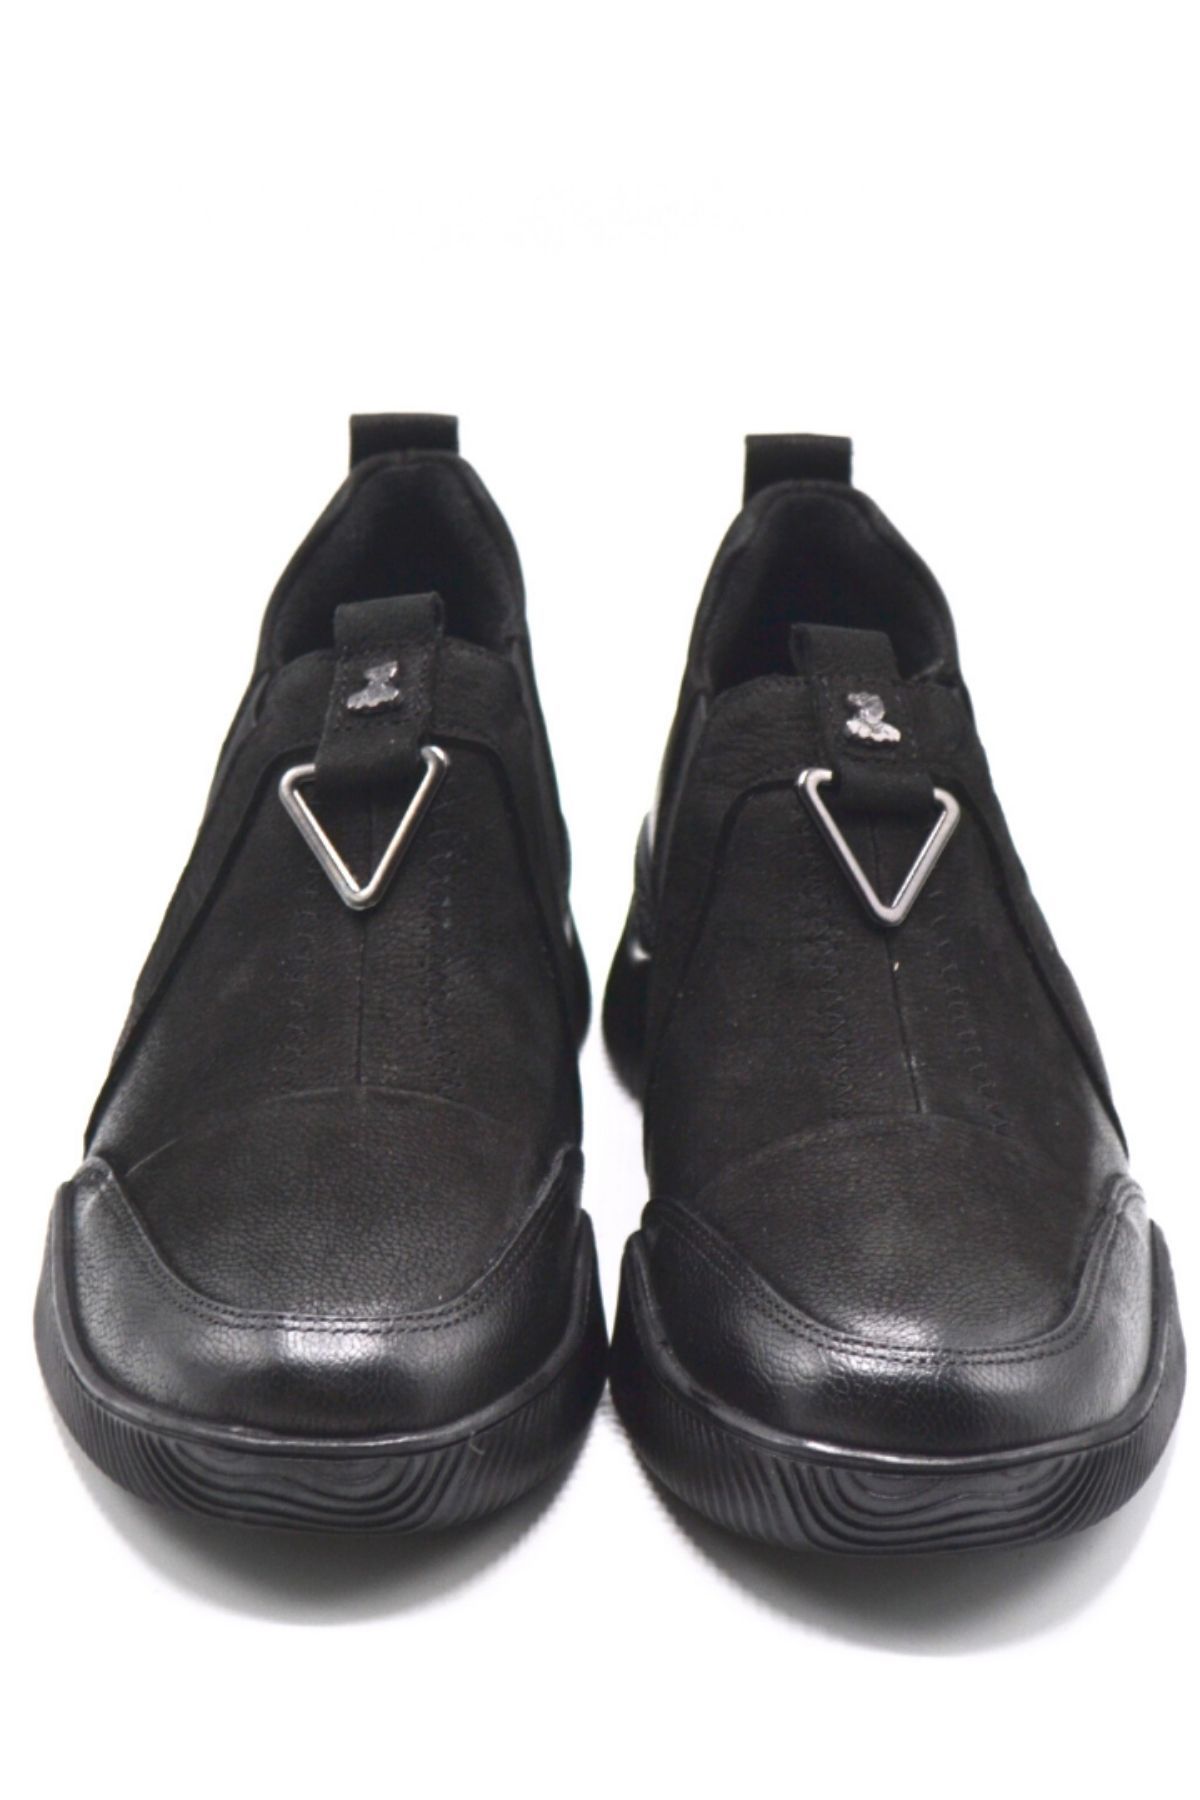 Kadın Comfort Deri Ayakkabı Siyah 1953840K - Thumbnail